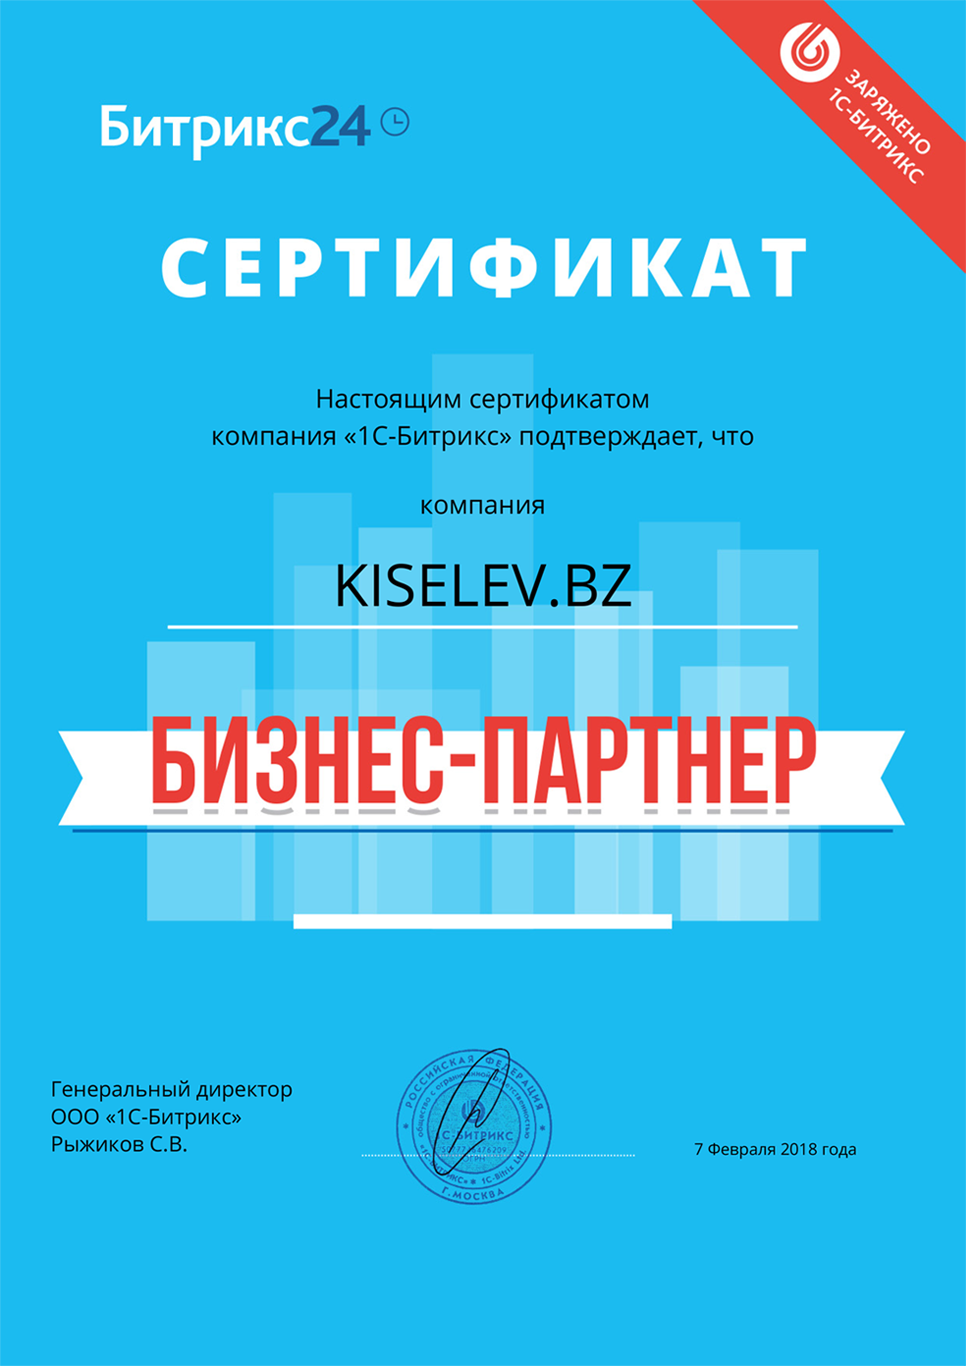 Сертификат партнёра по АМОСРМ в Волгограде